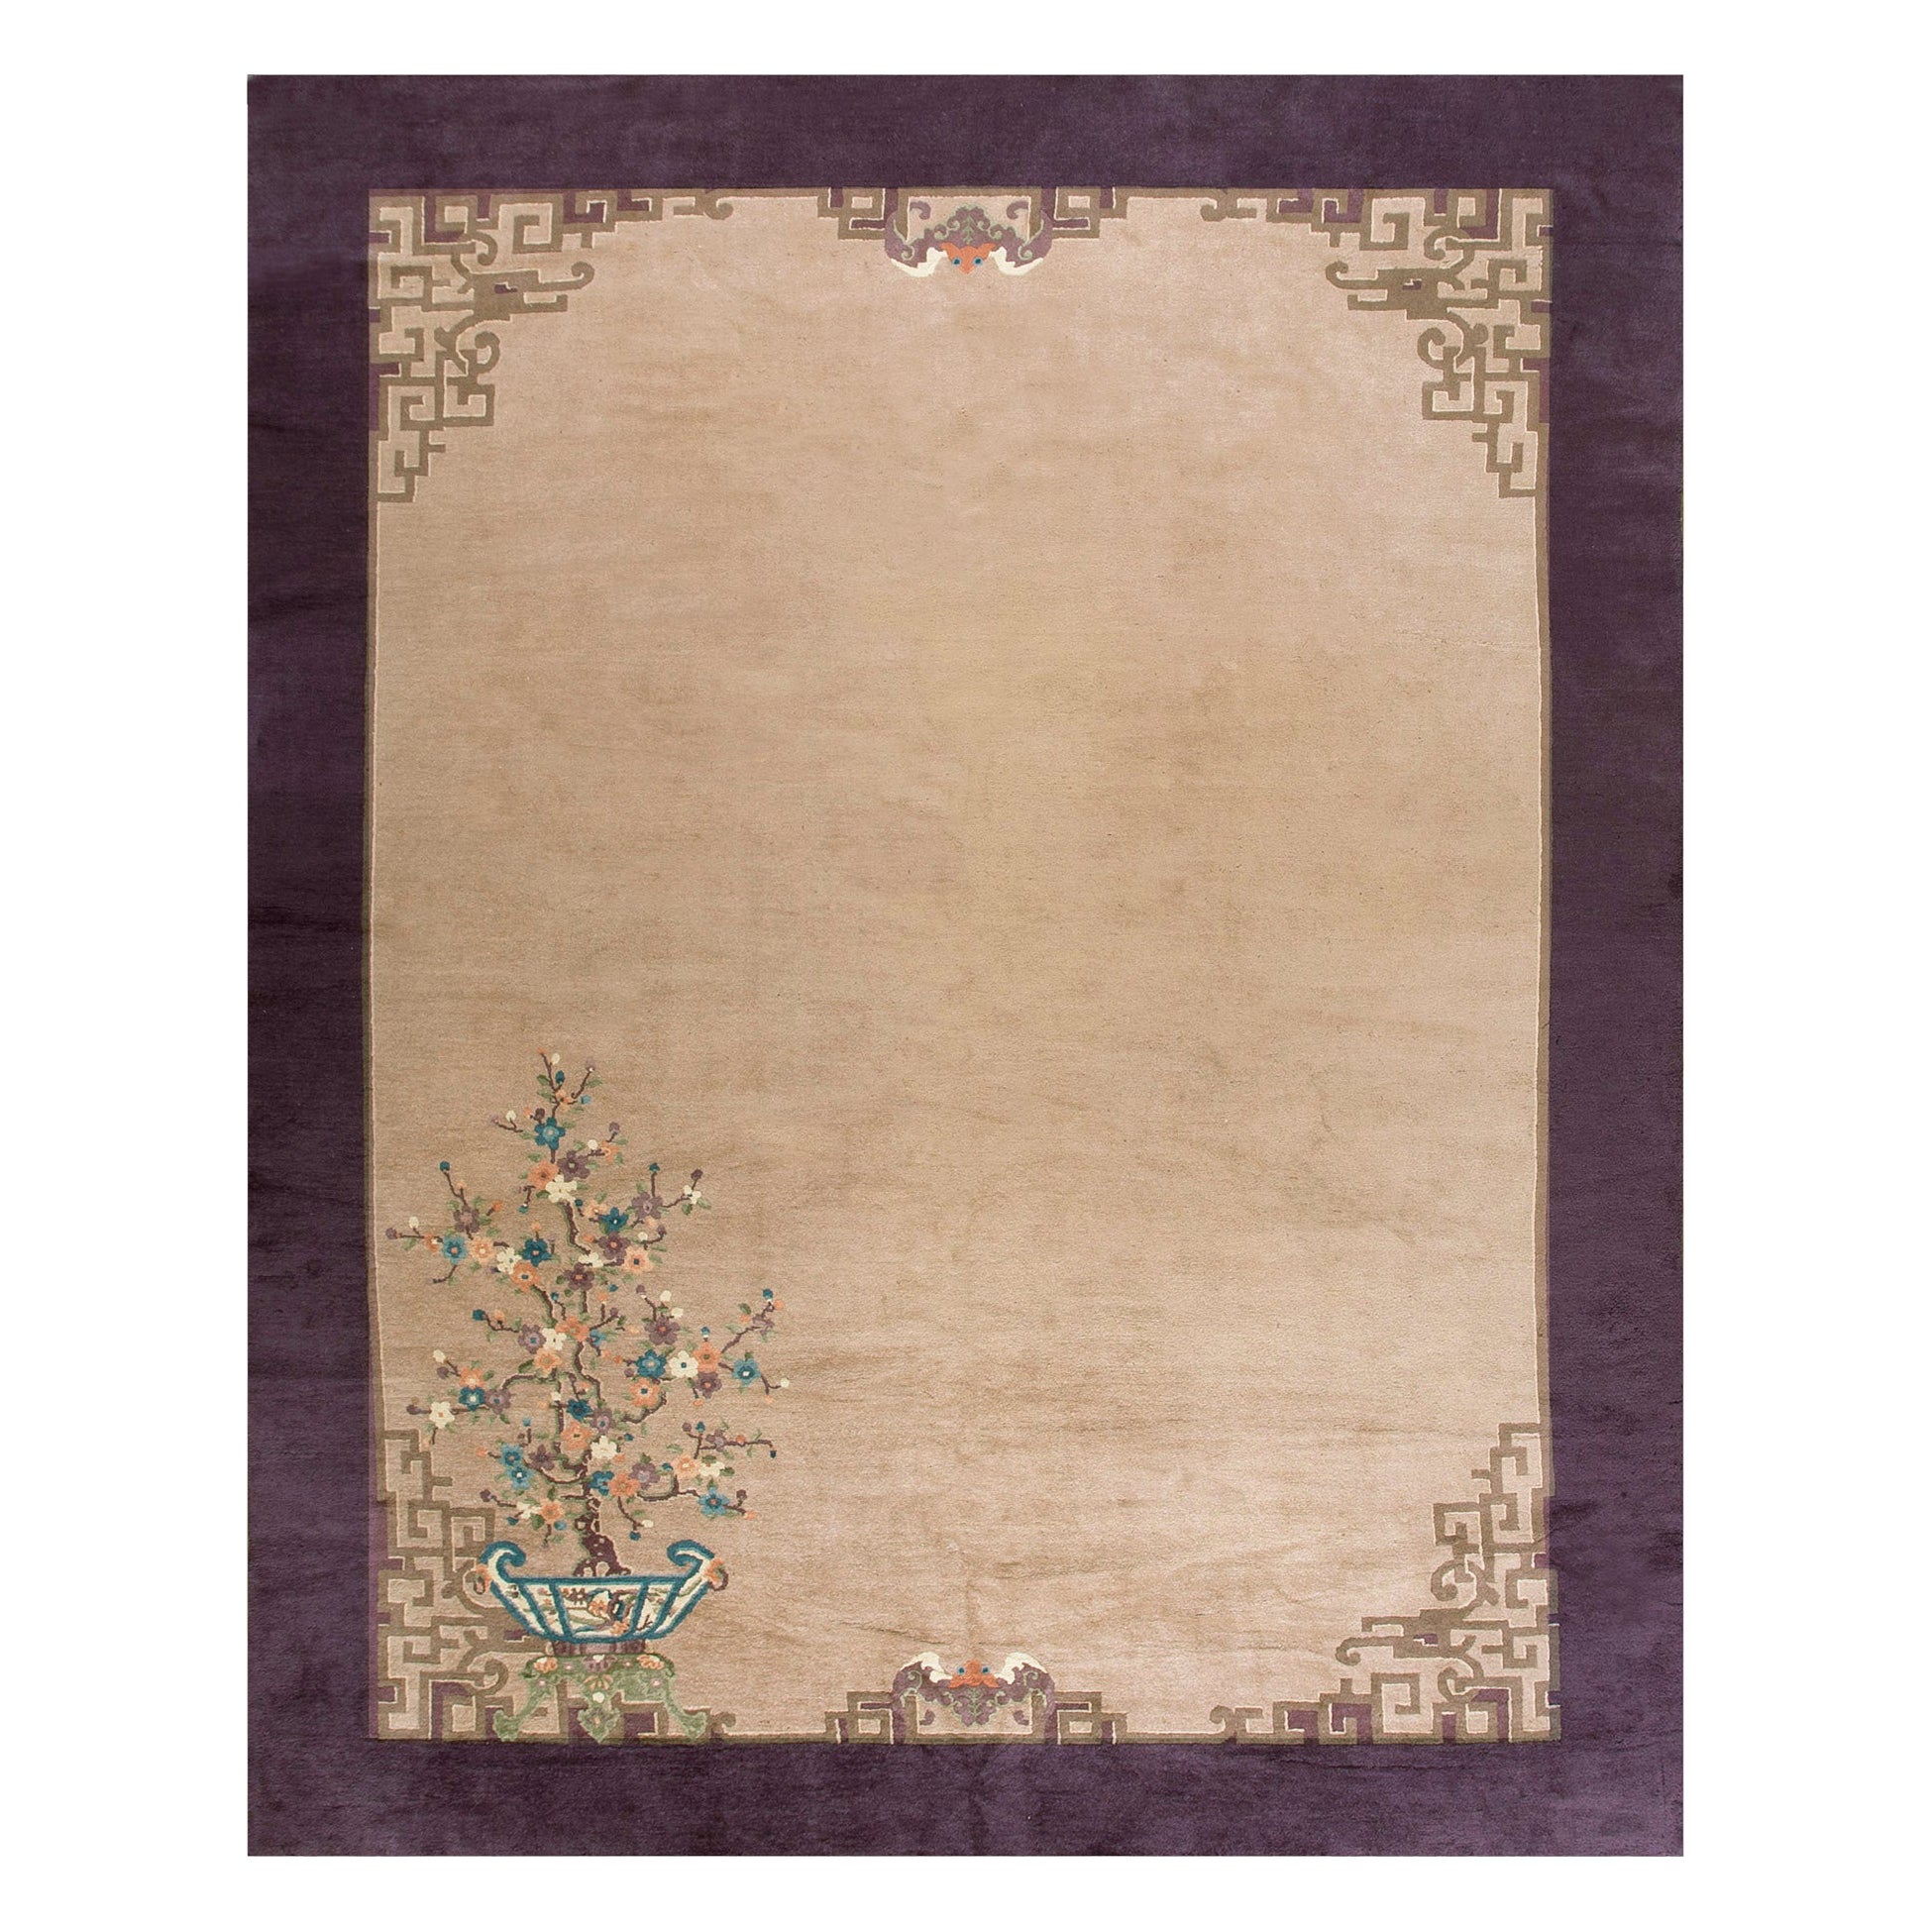 Chinesischer Art-déco-Teppich aus den 1920er Jahren ( 9''3'''' x 11''8'''' - 282 x 282 x 355 )